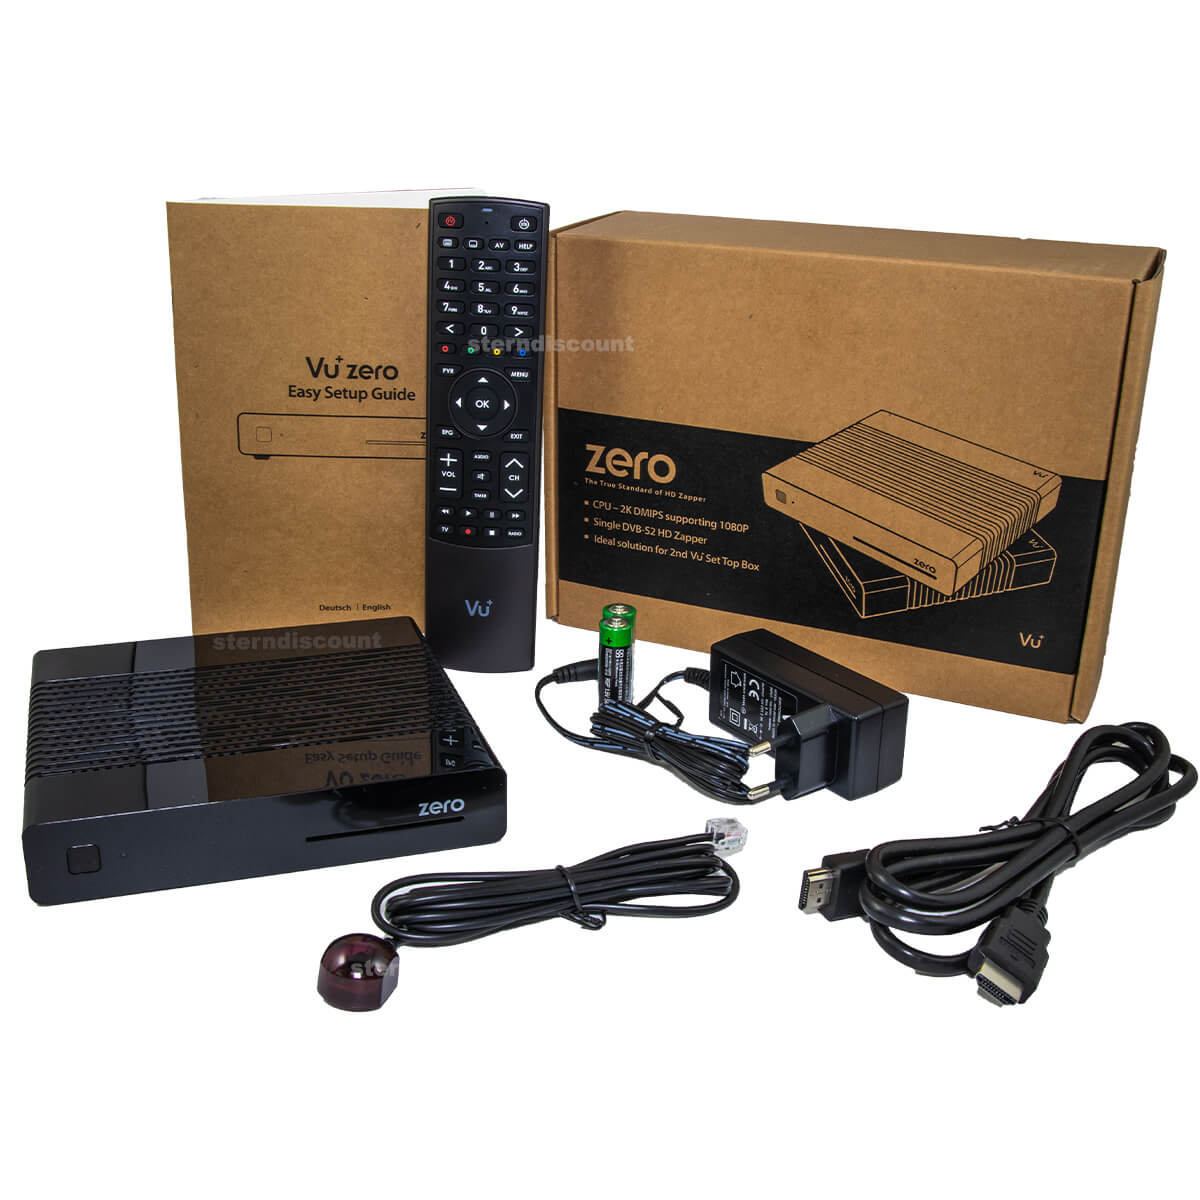 Vu+ ZERO HD rev.2 H.265 DVB-S2 Satellitenreceiver 